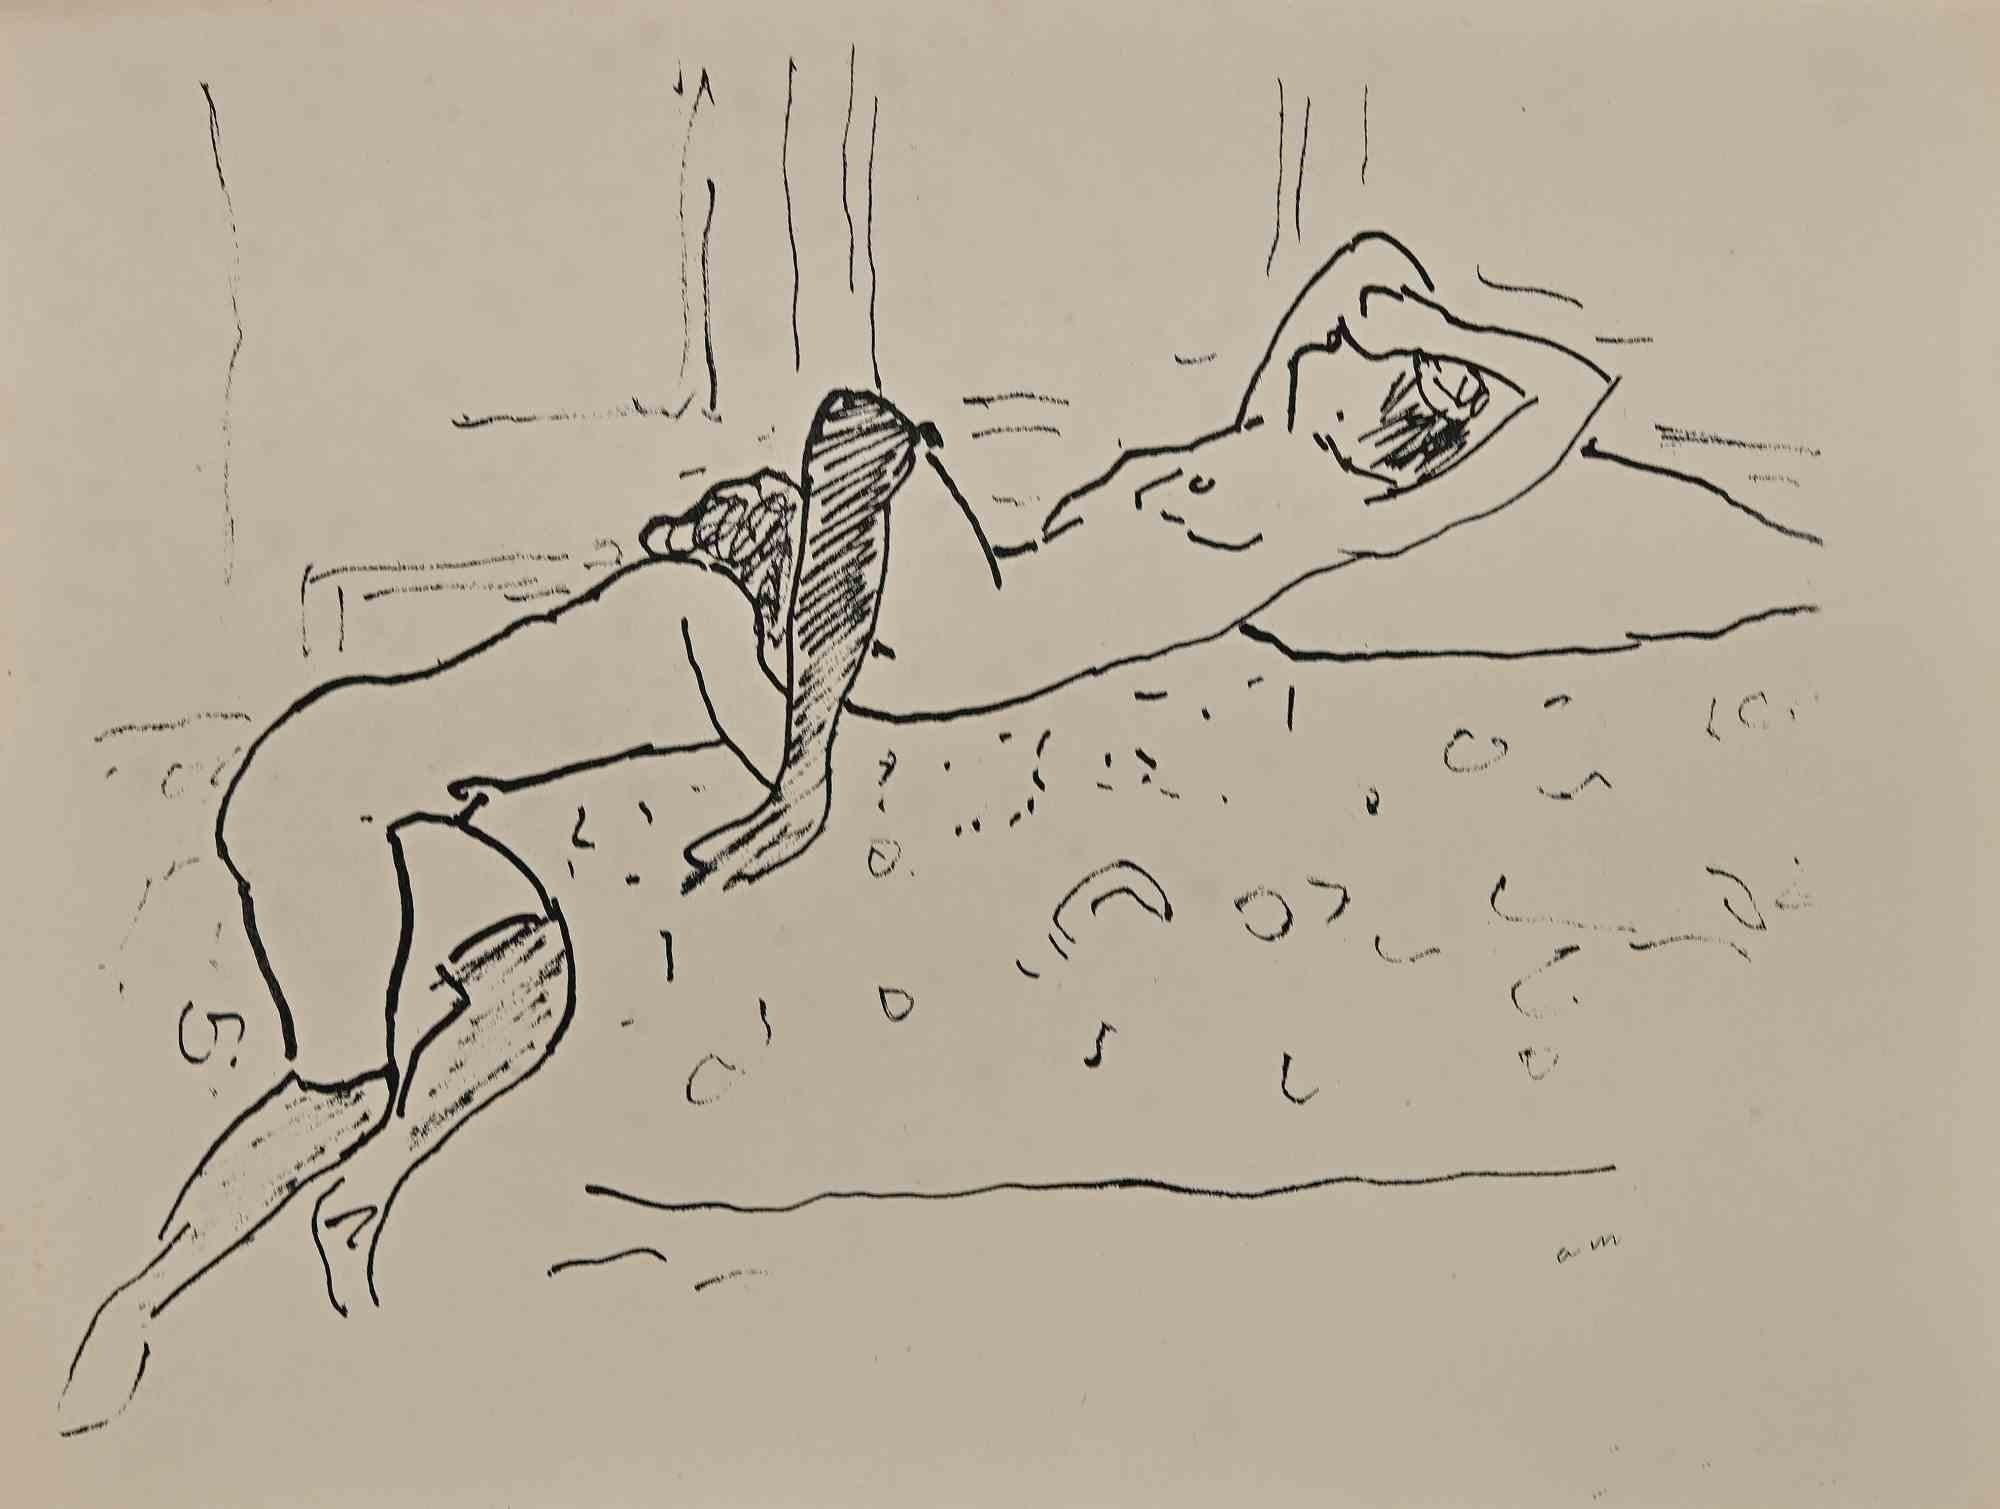 Scène érotique est une magnifique lithographie sur papier ivoire, réalisée dans les années 1920 par Albert Marquet.  (Bordeaux, 1875 - Paris, 1947).

Monogrammé sur la plaque dans la marge inférieure. Tamponné au dos "Collection de